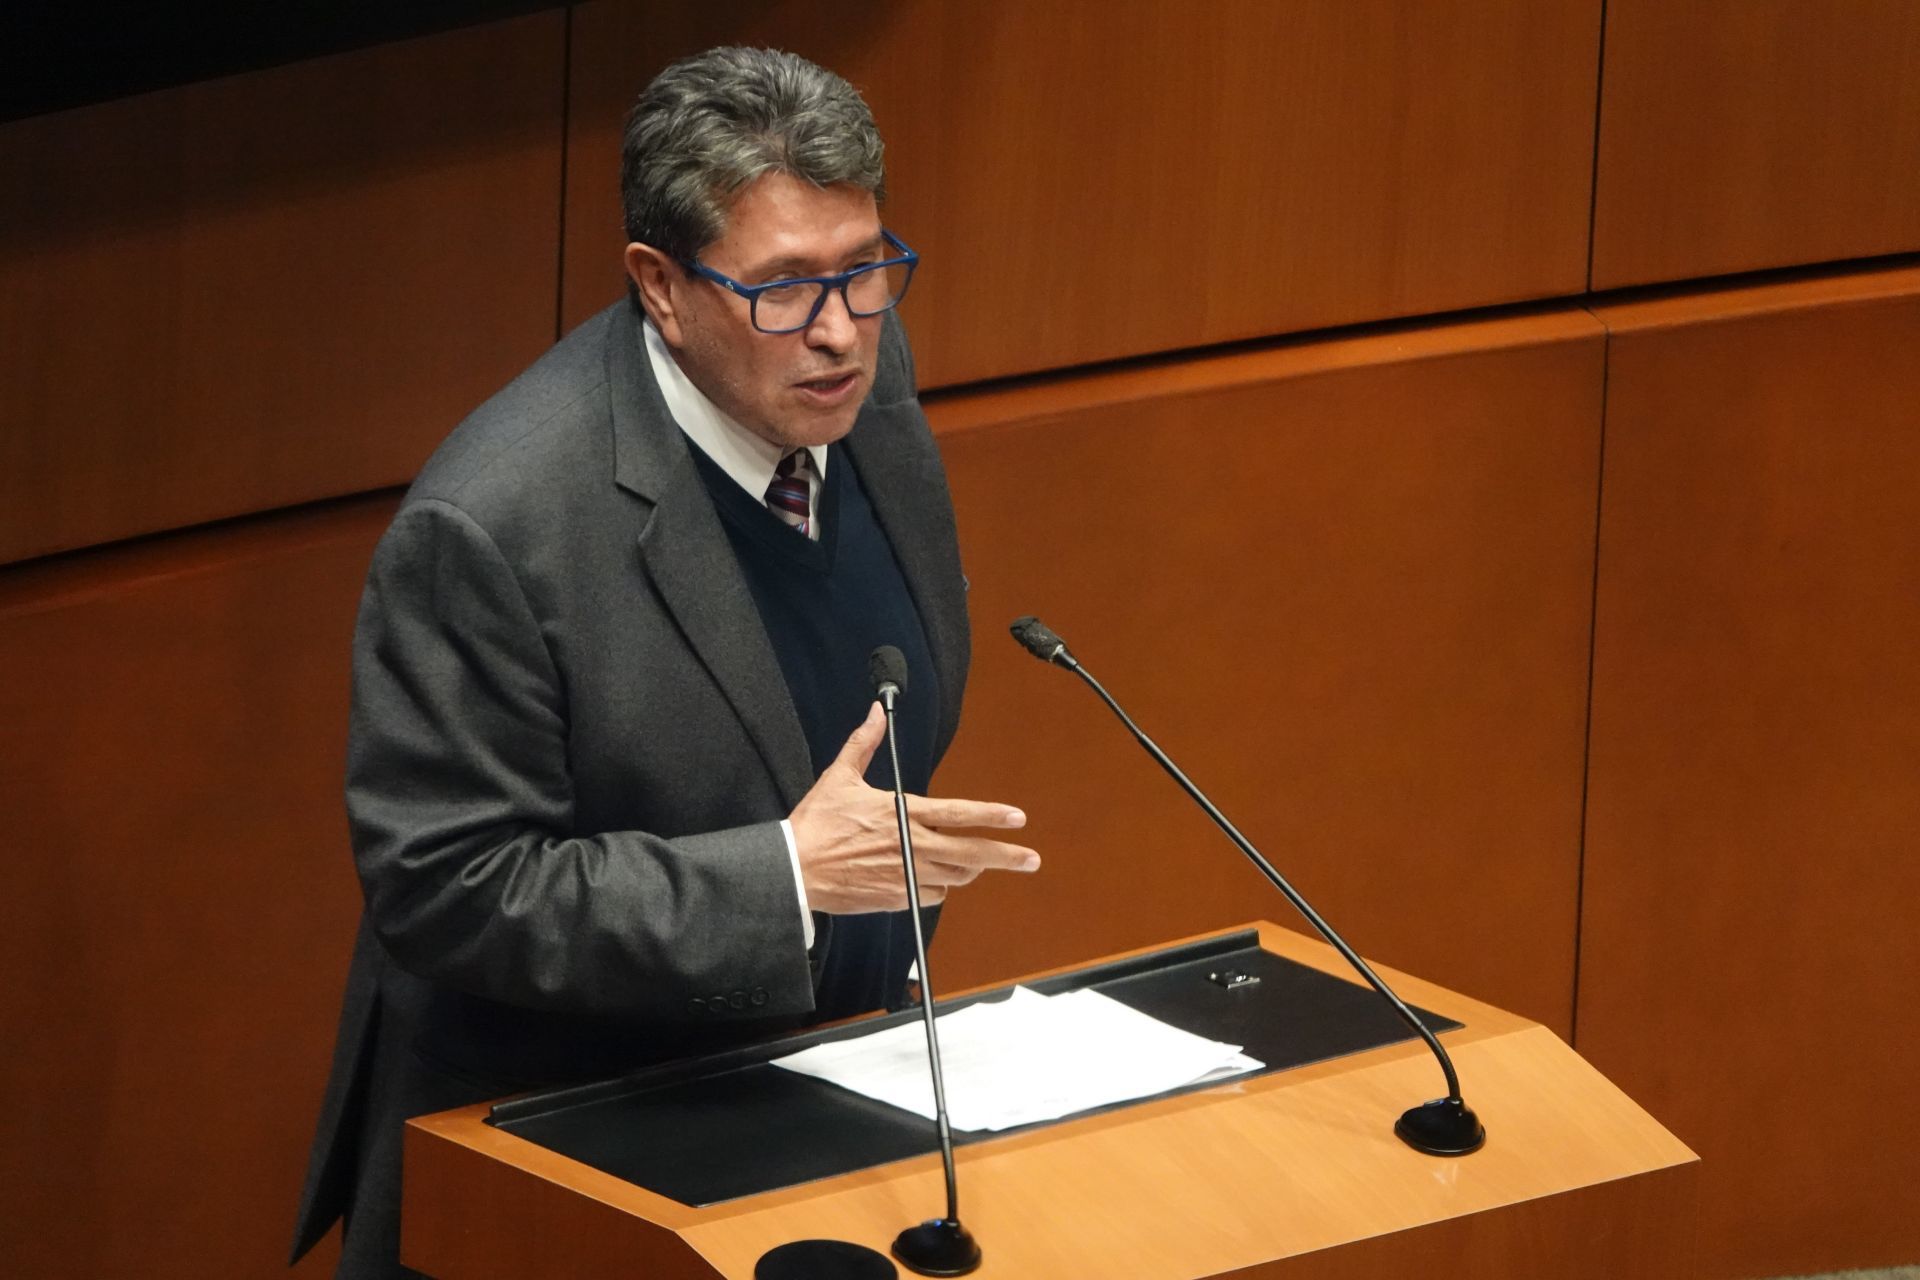 Monreal plantea que INE negocie con Hacienda más recursos para revocación